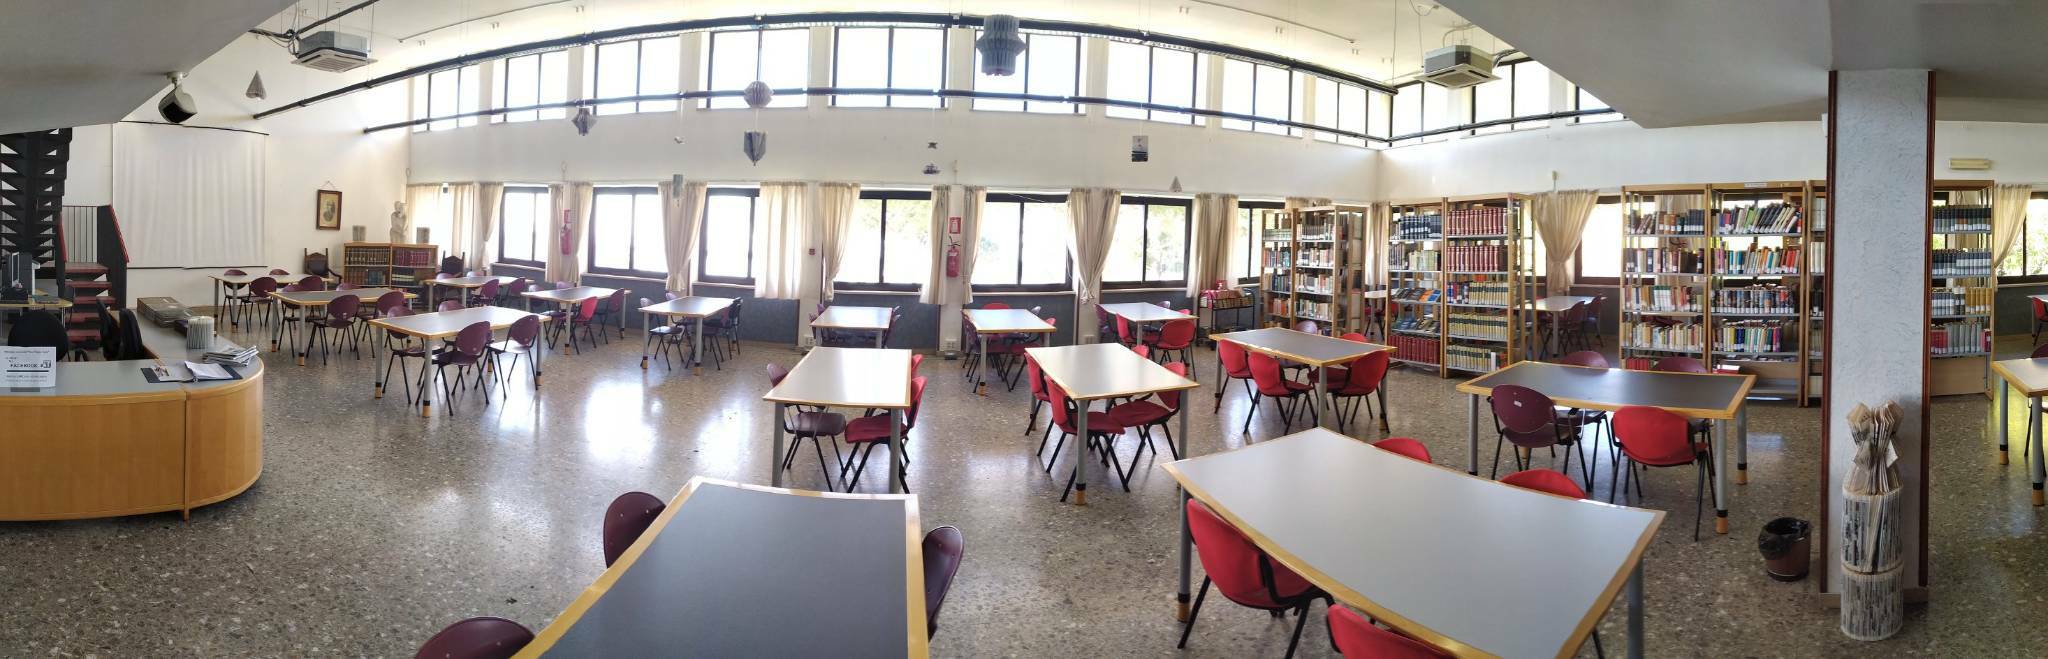 La Regione Lazio finanzia biblioteca comunale e archivio storico di Formia